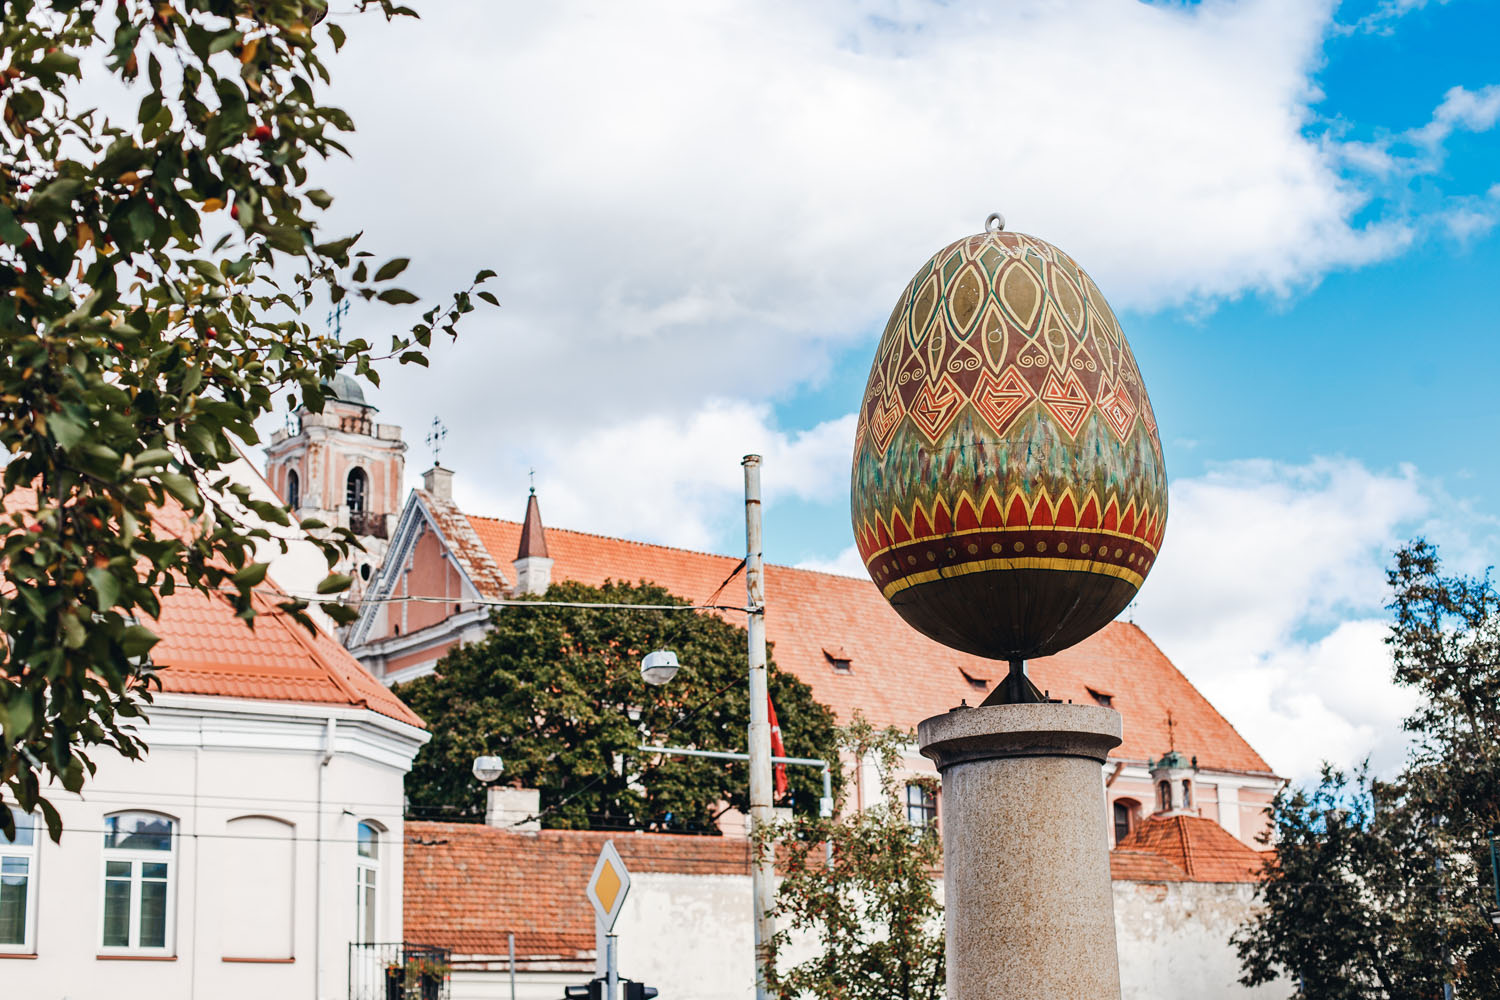 Vilnius Easter Egg